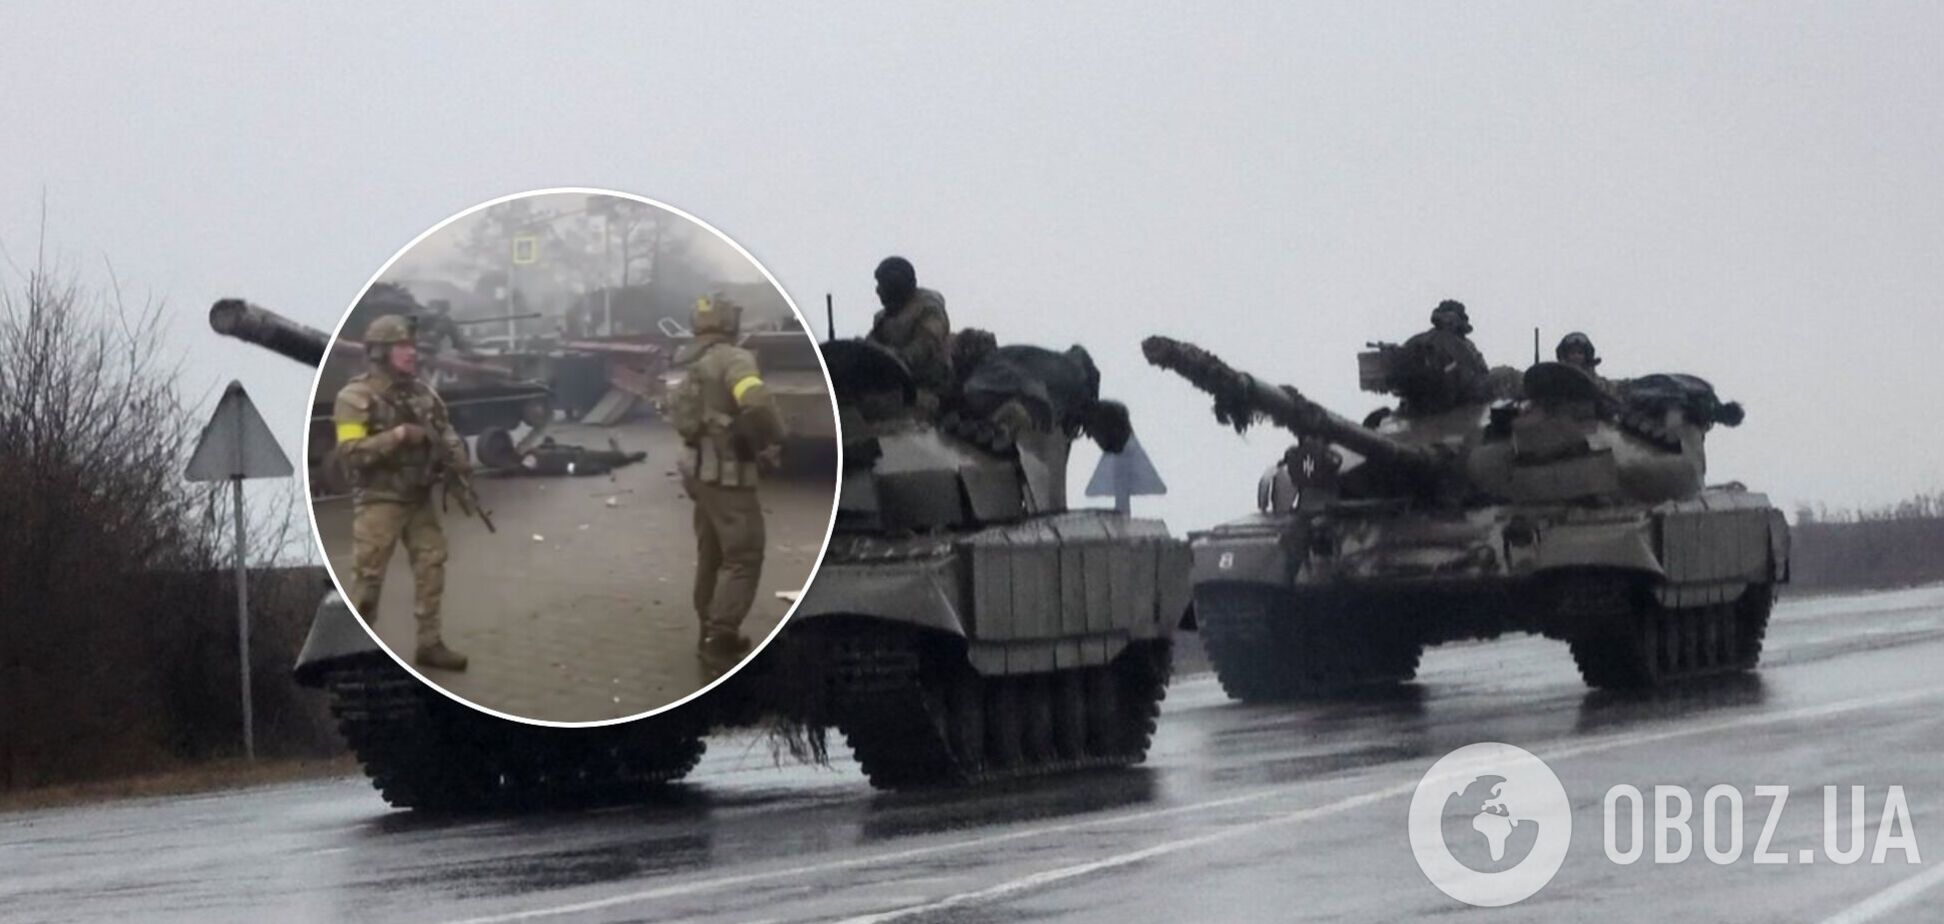 В Ирпене уничтожена колонна российского десанта. Видео 18+